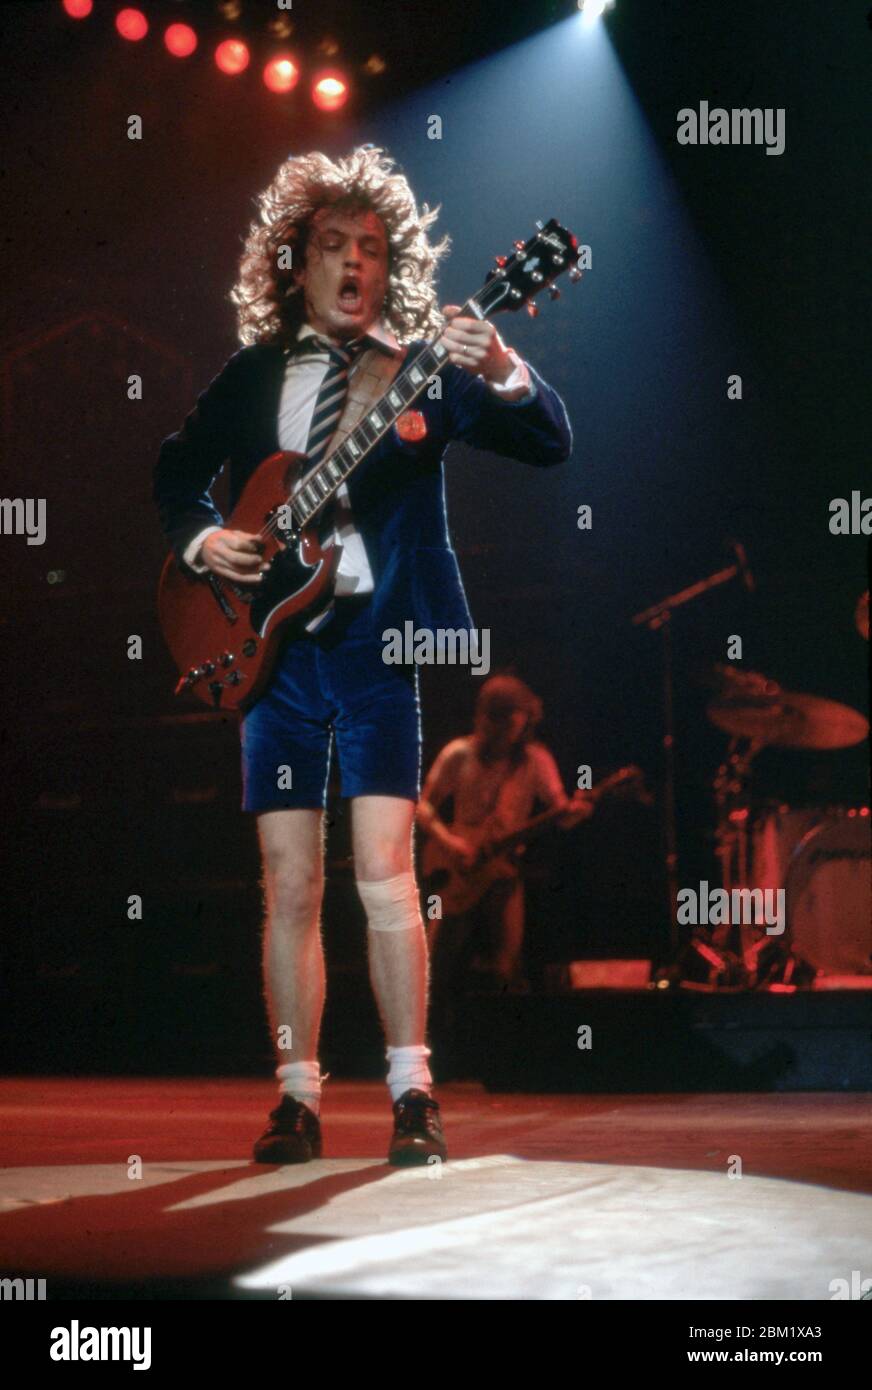 DETROIT - 17 DE NOVIEMBRE: Angus Young, guitarrista principal de AC/DC, con  su icónico uniforme de colegialas británicas y tocando su Gibson SG rojo,  actúa durante la gira de la Flick of